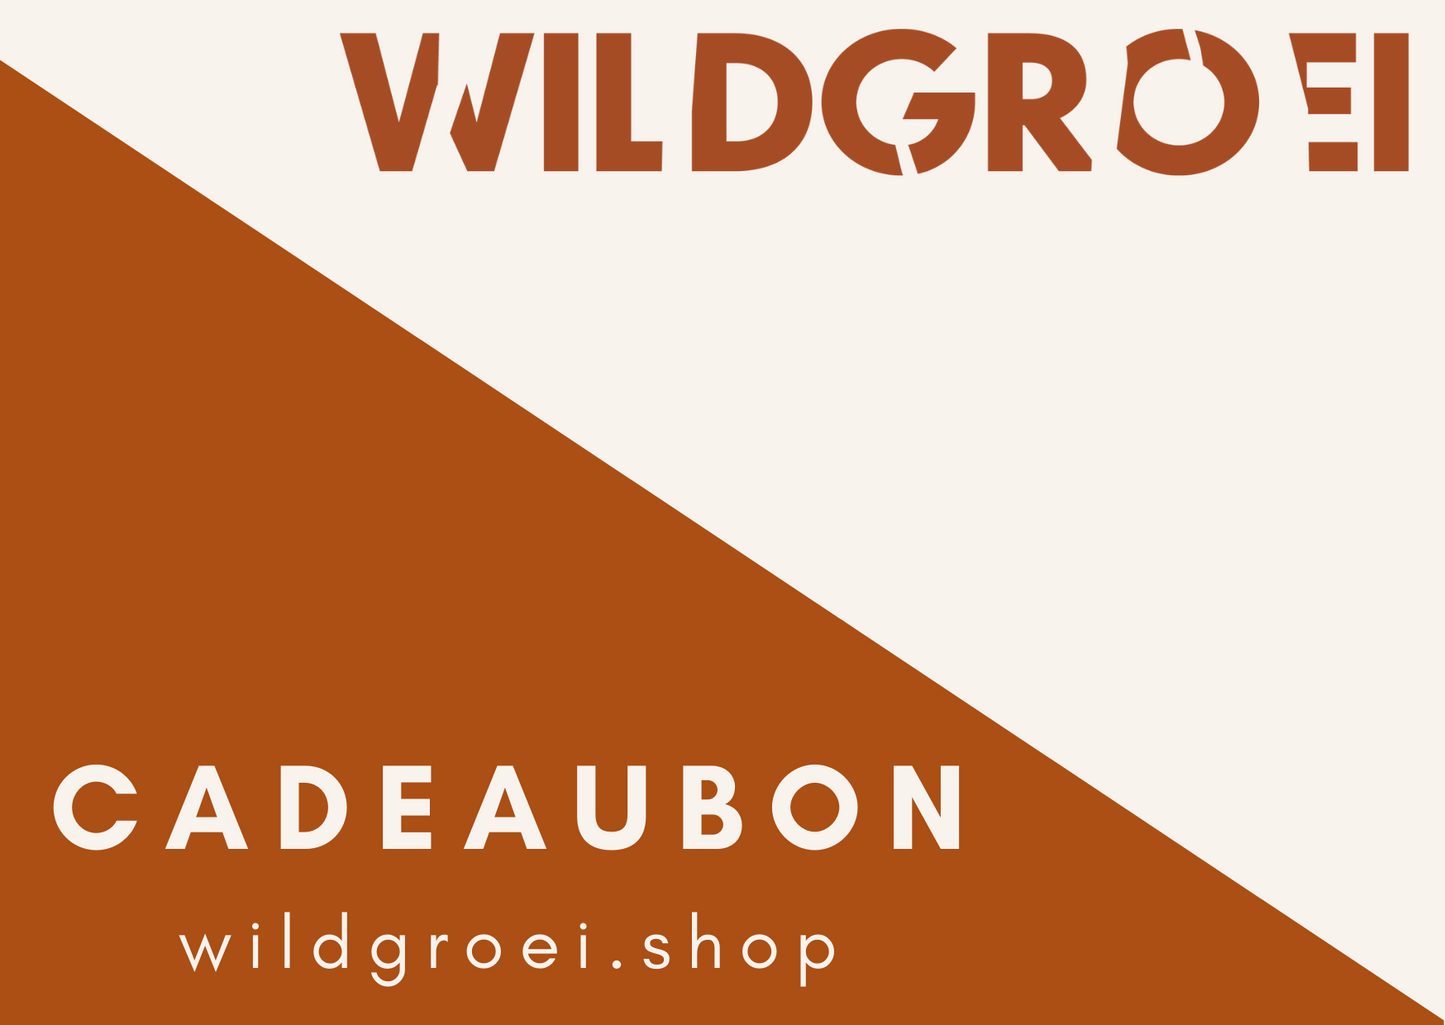 Wildgroei webshop cadeaubon